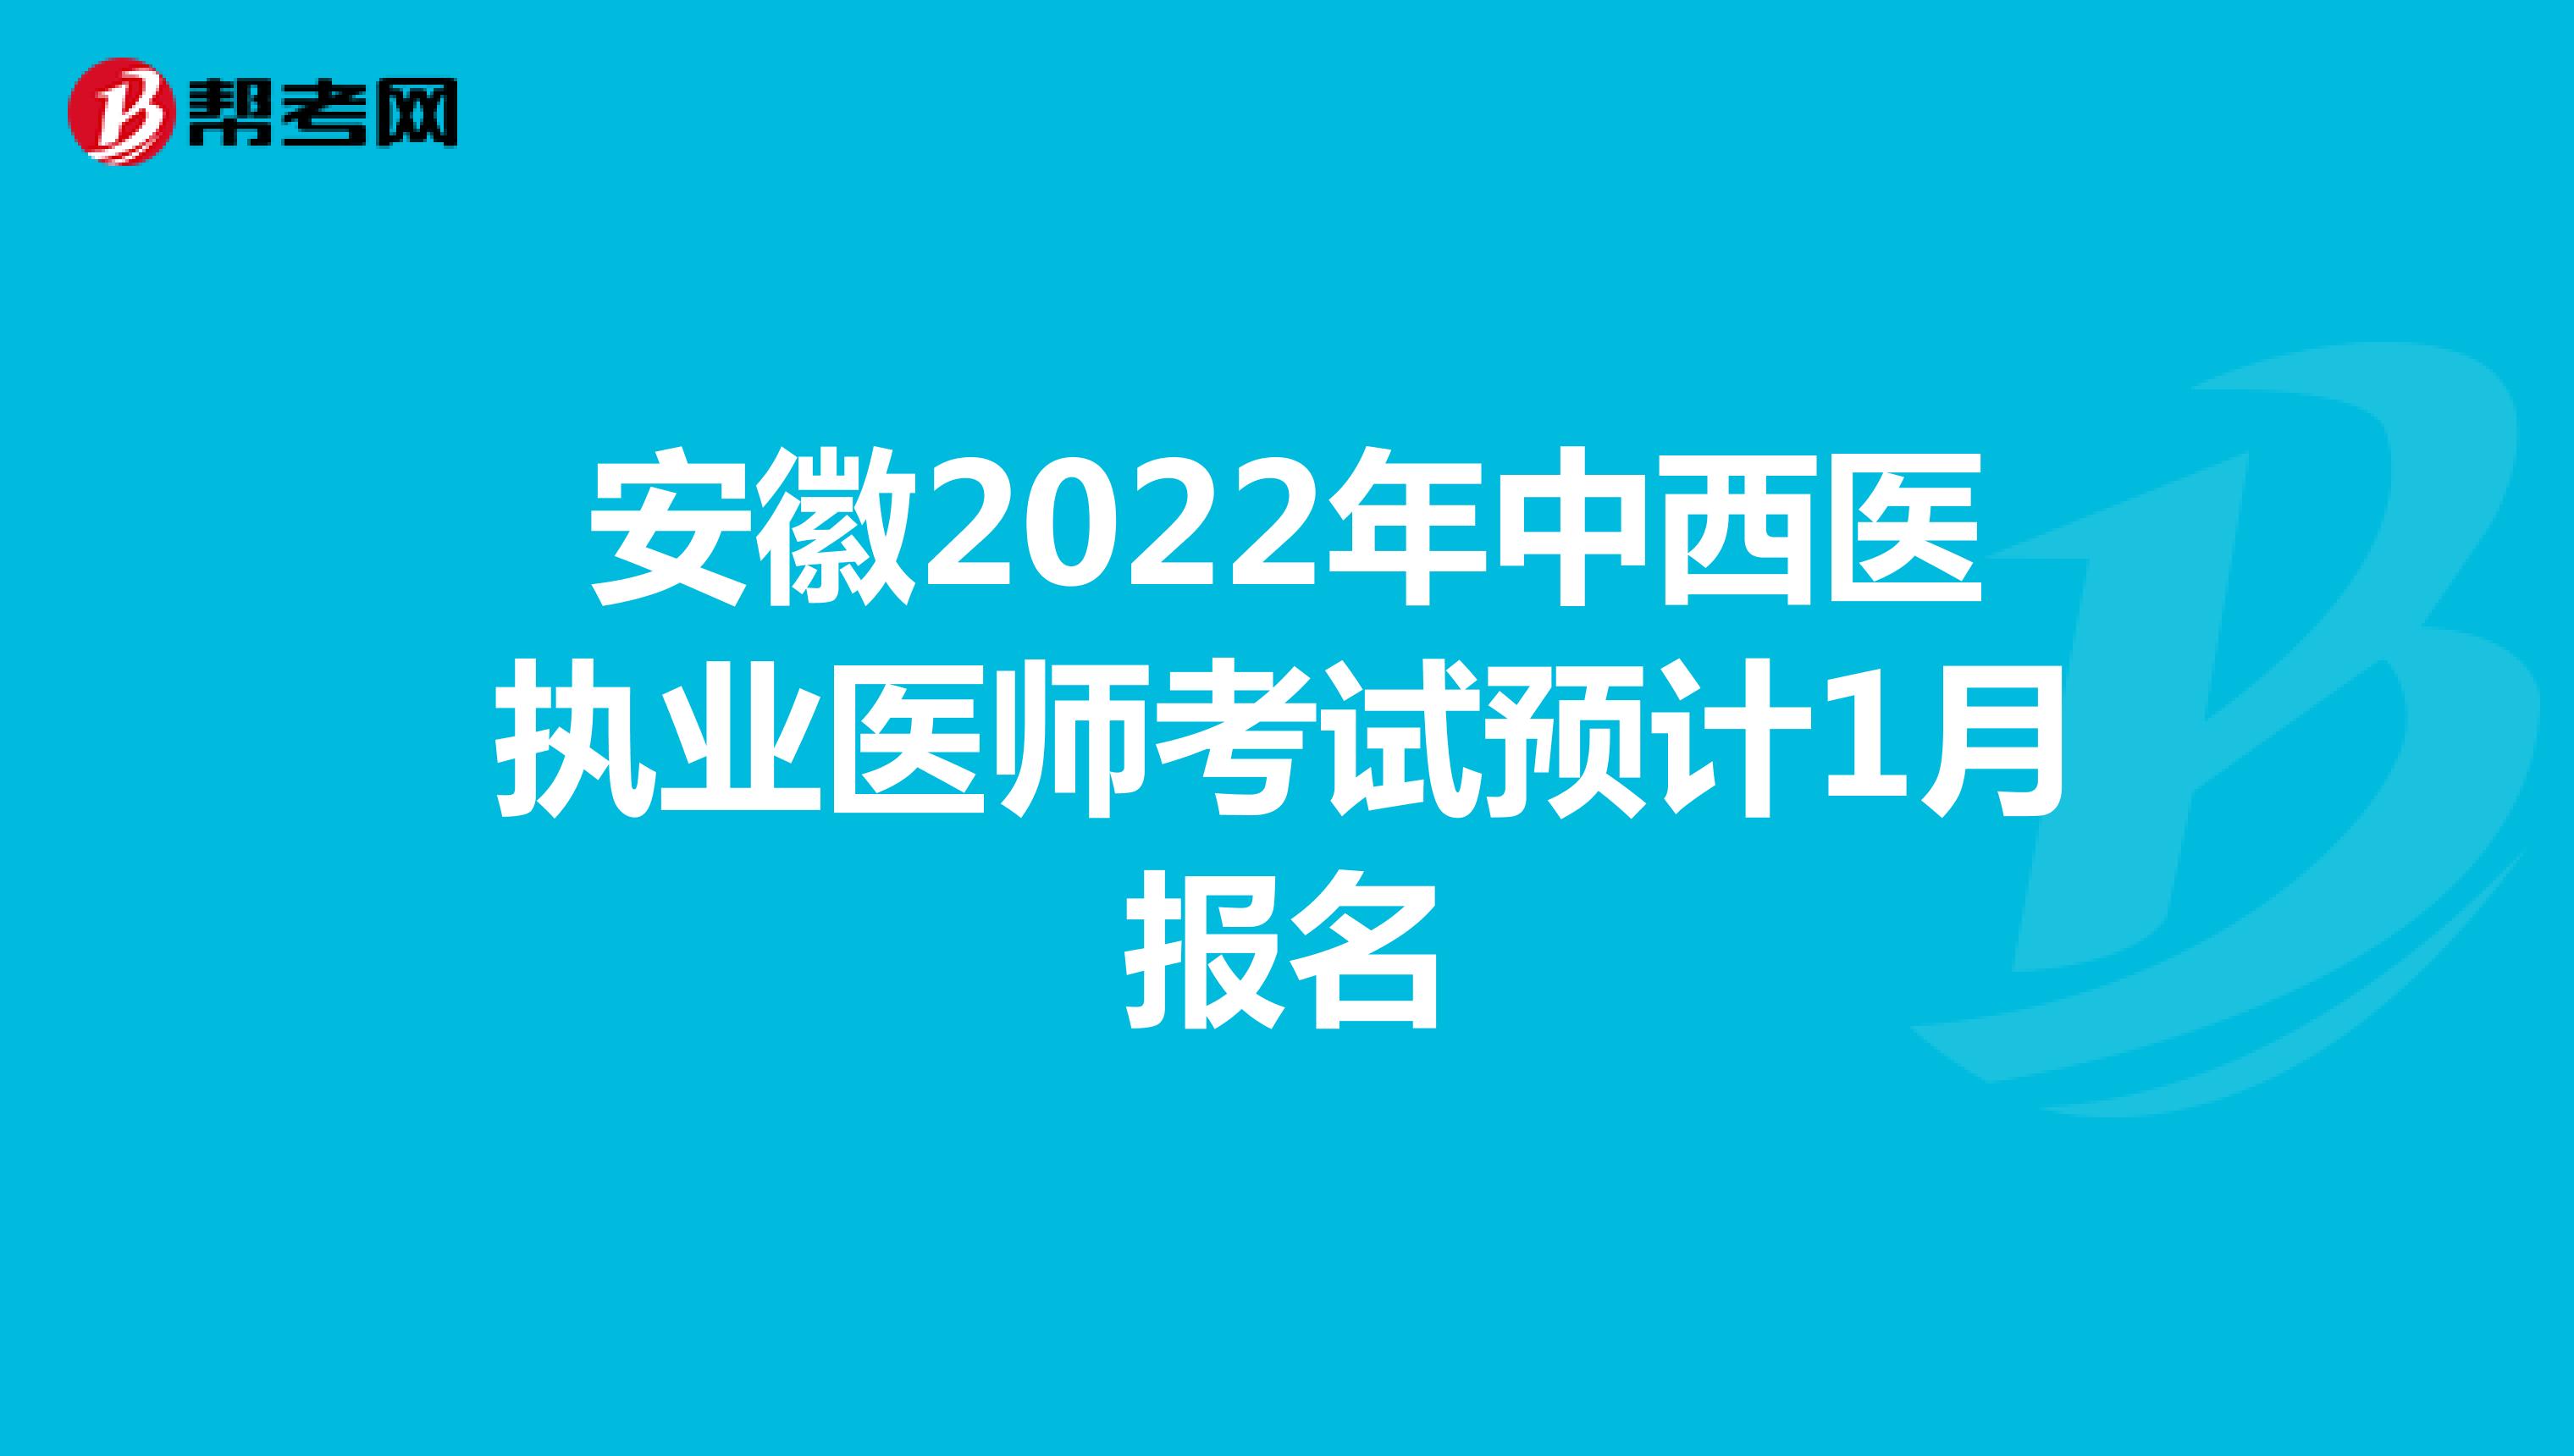 安徽2022年中西医执业医师考试预计1月报名